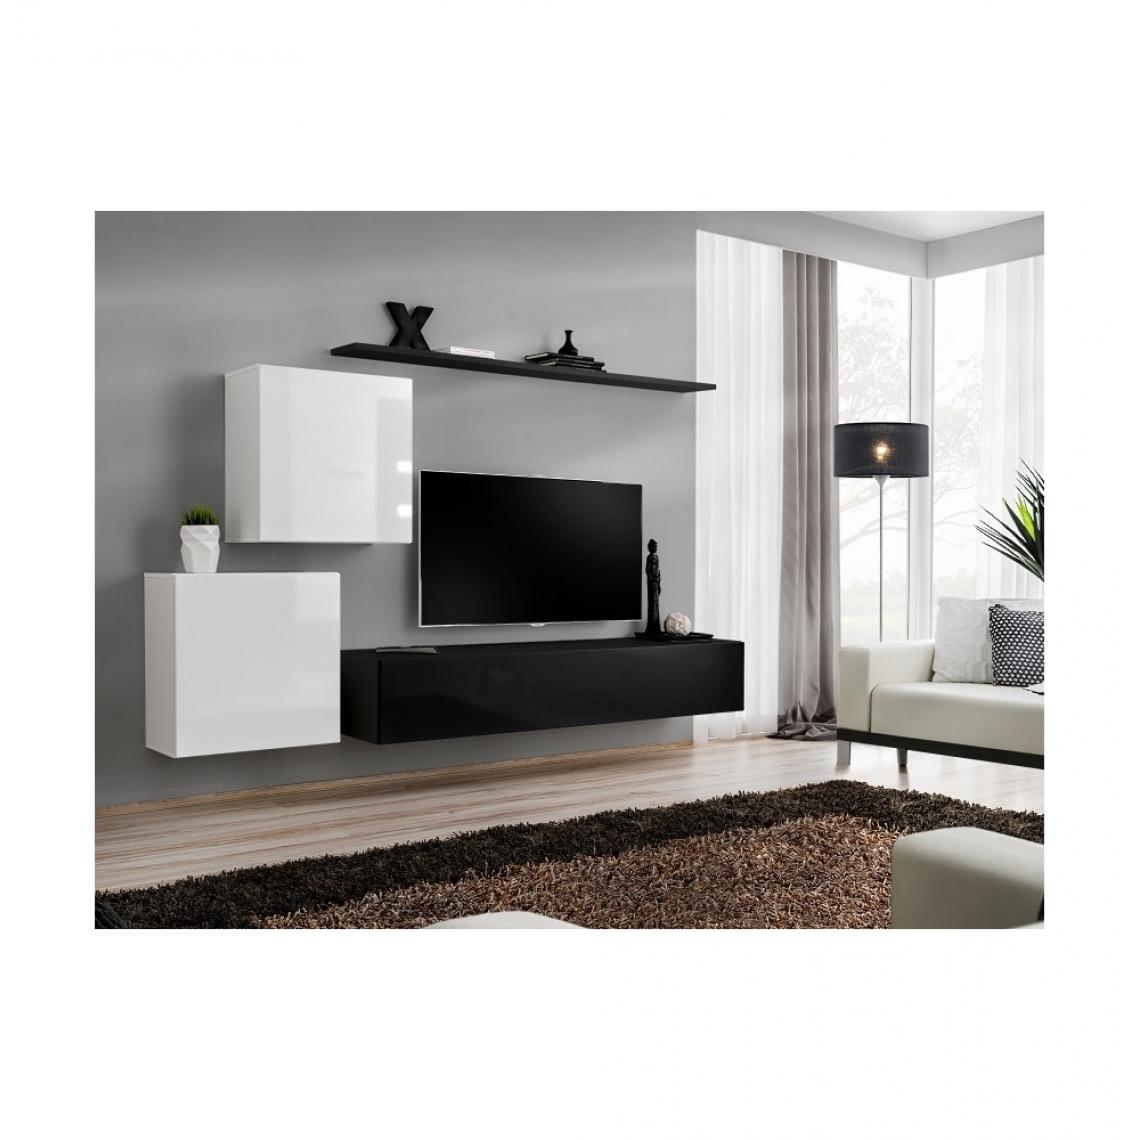 Ac-Deco - Ensemble meuble TV mural - Switch V - 250 cm x 150 cm x 40 cm - Blanc et noir - Meubles TV, Hi-Fi